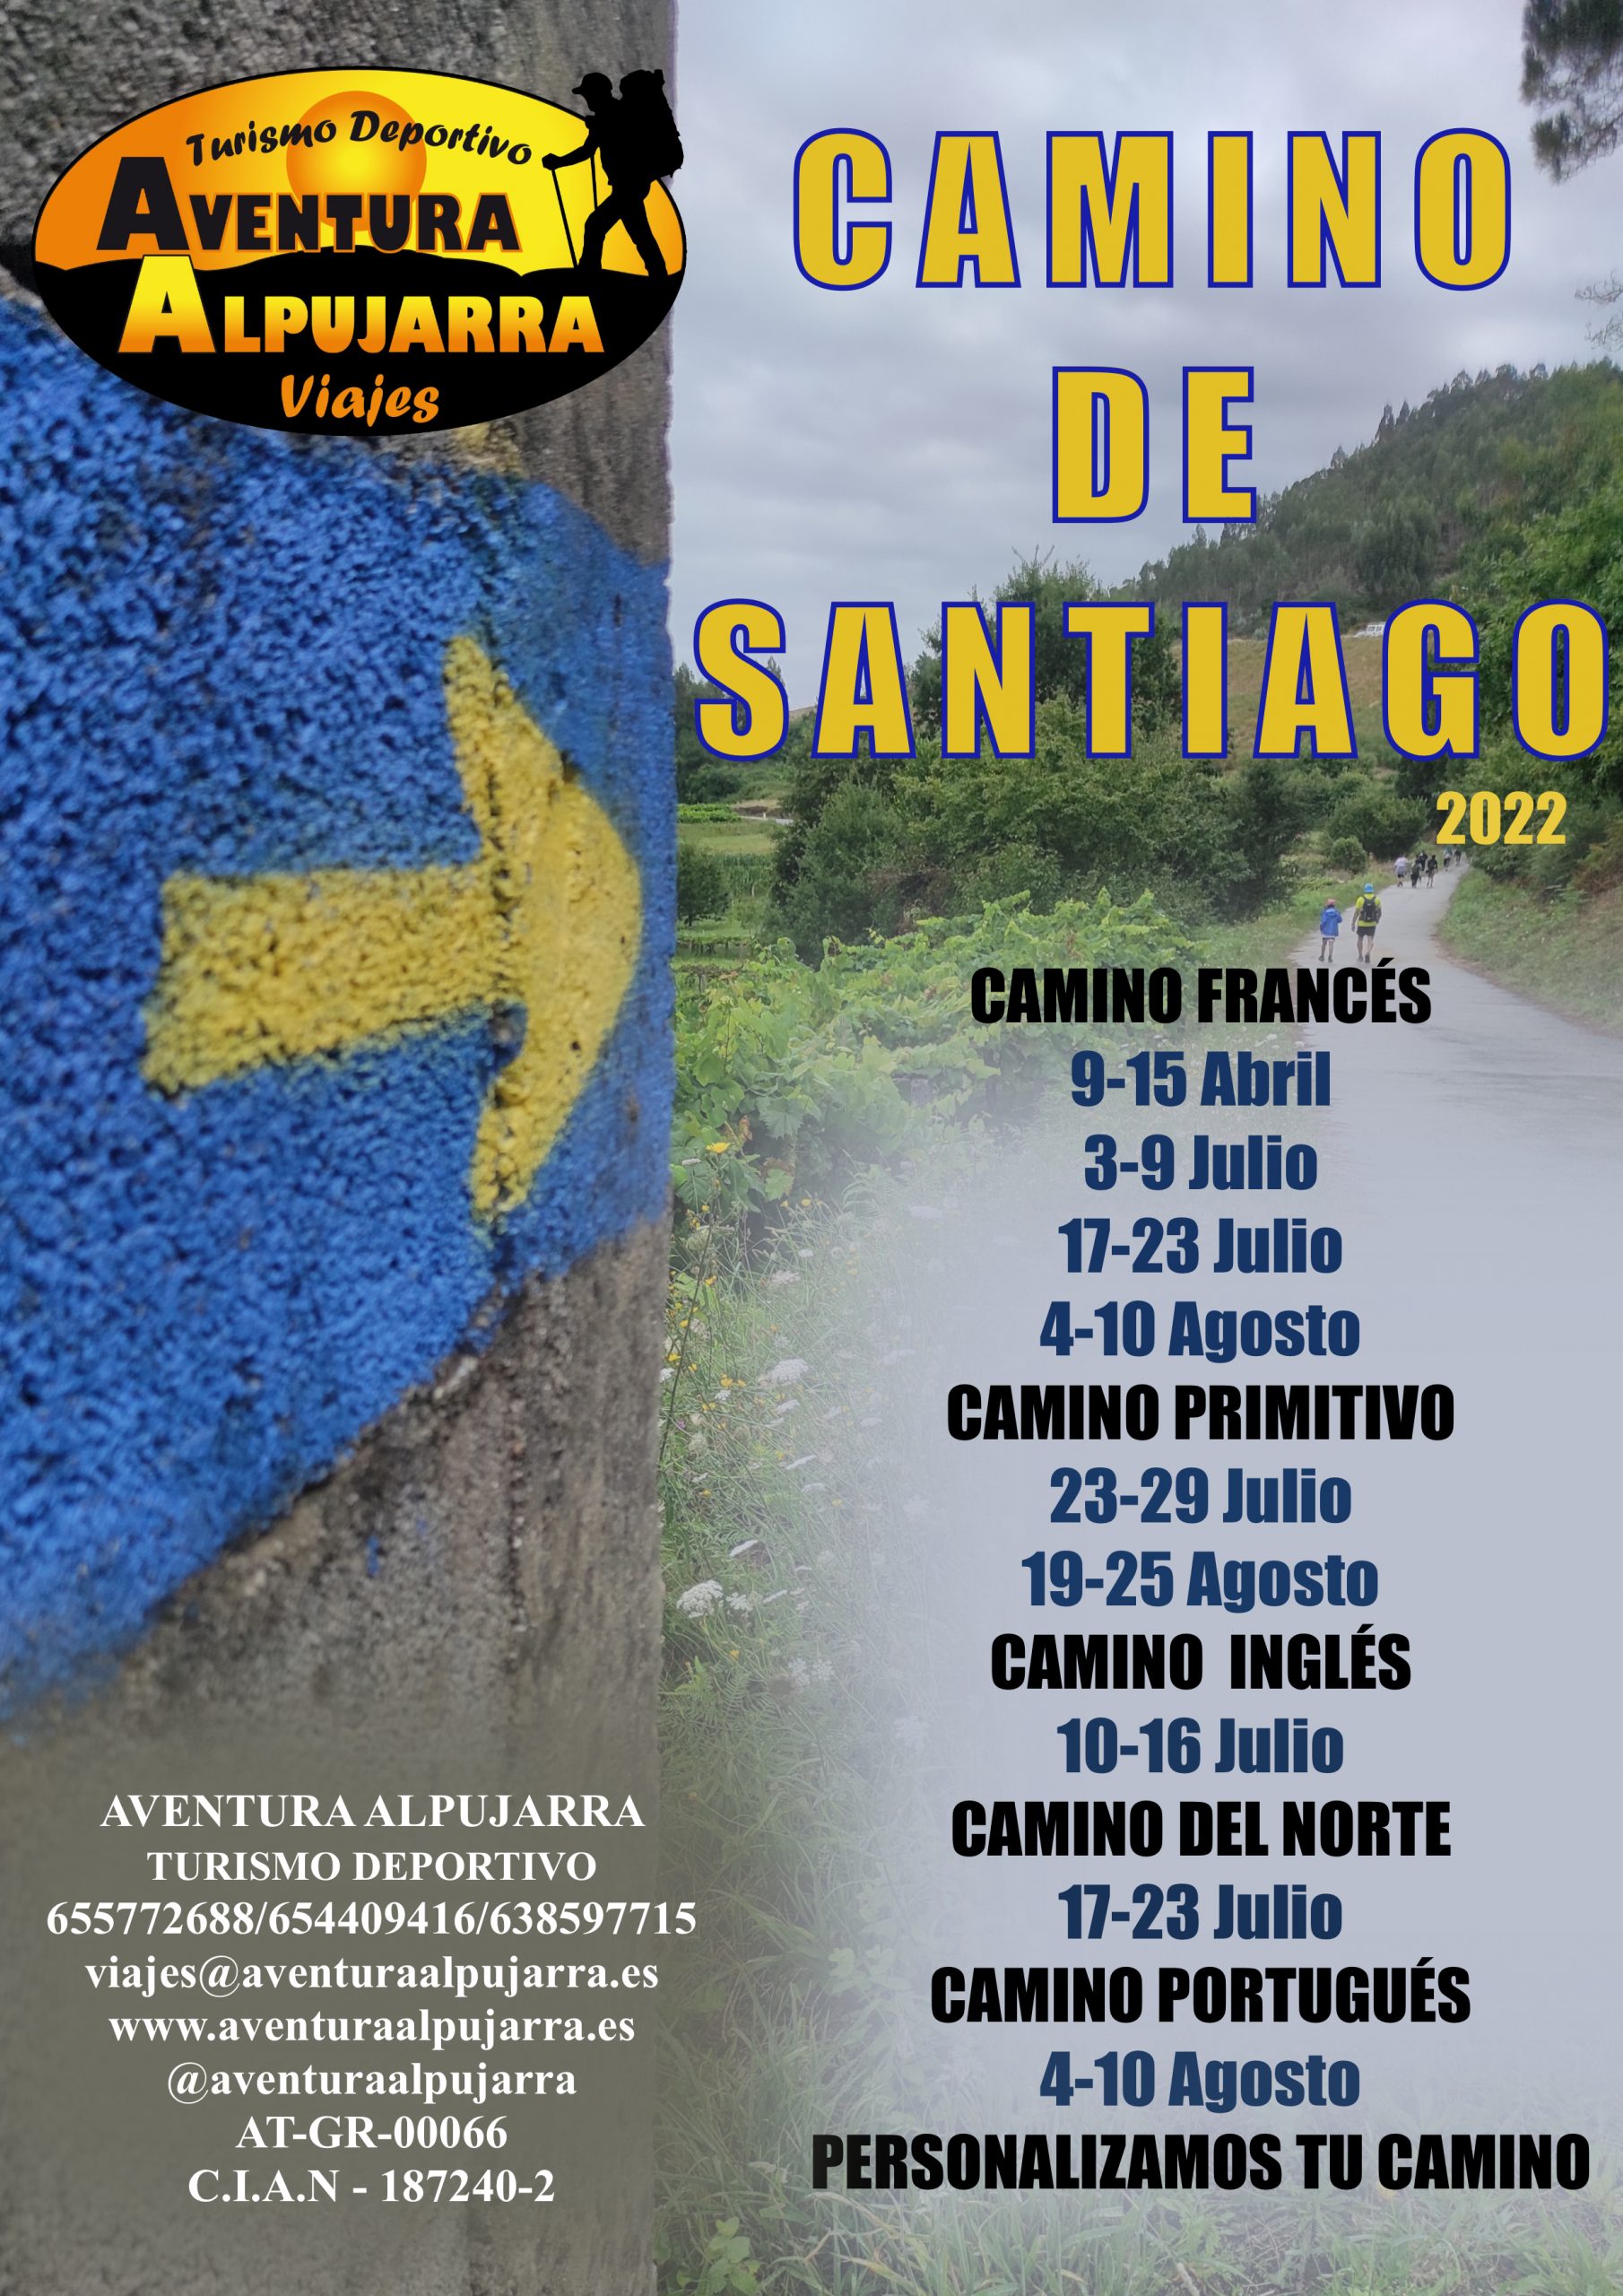 Viajes Aventura Alpujarra - Camino de Santiago 2022